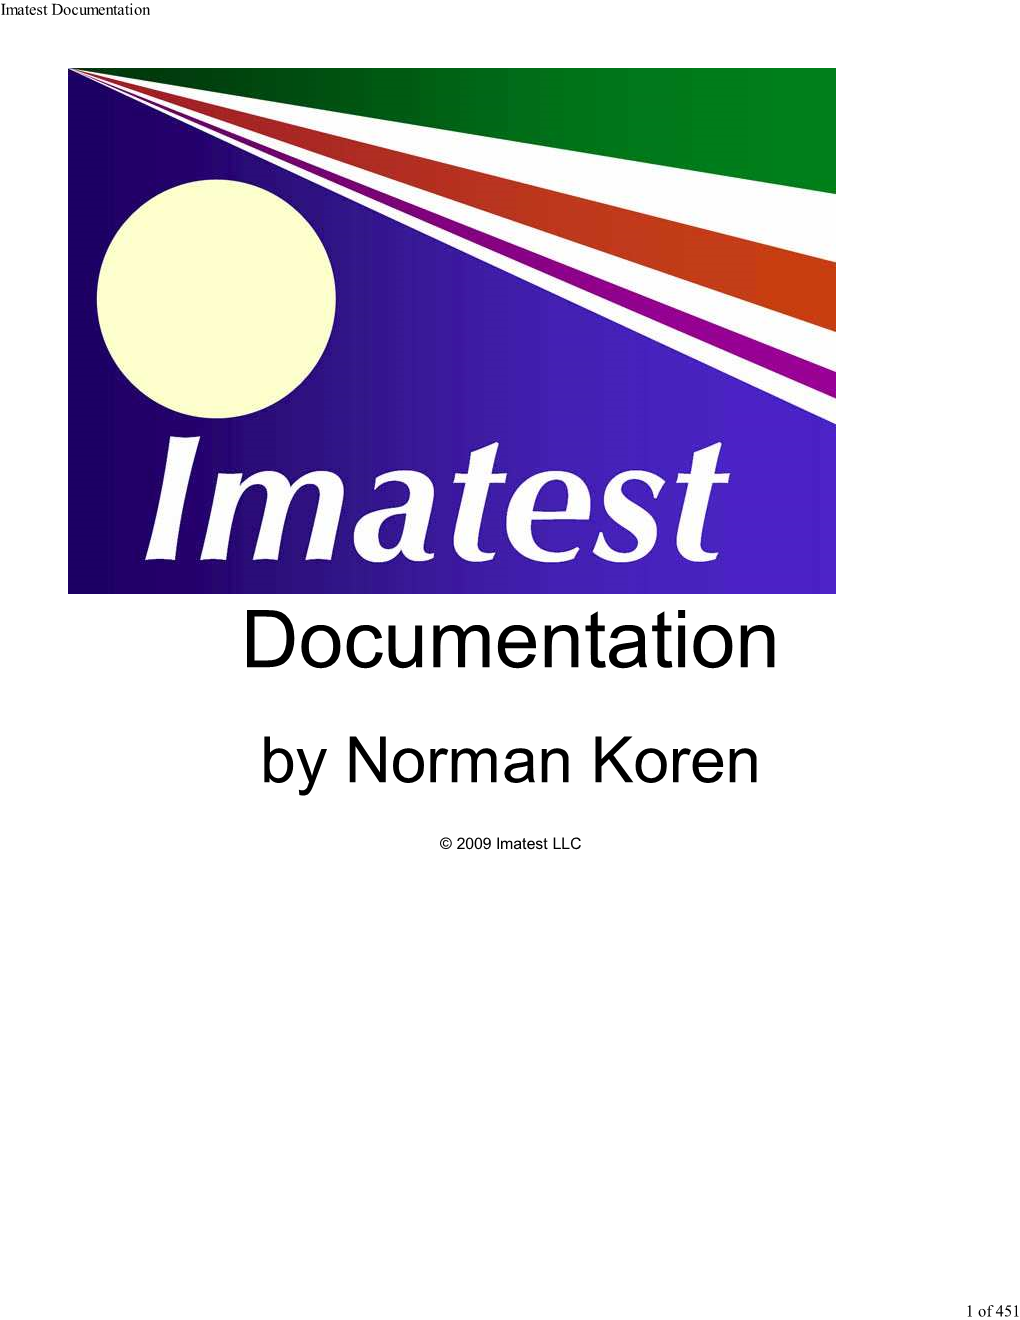 Imatest Documentation.Pdf